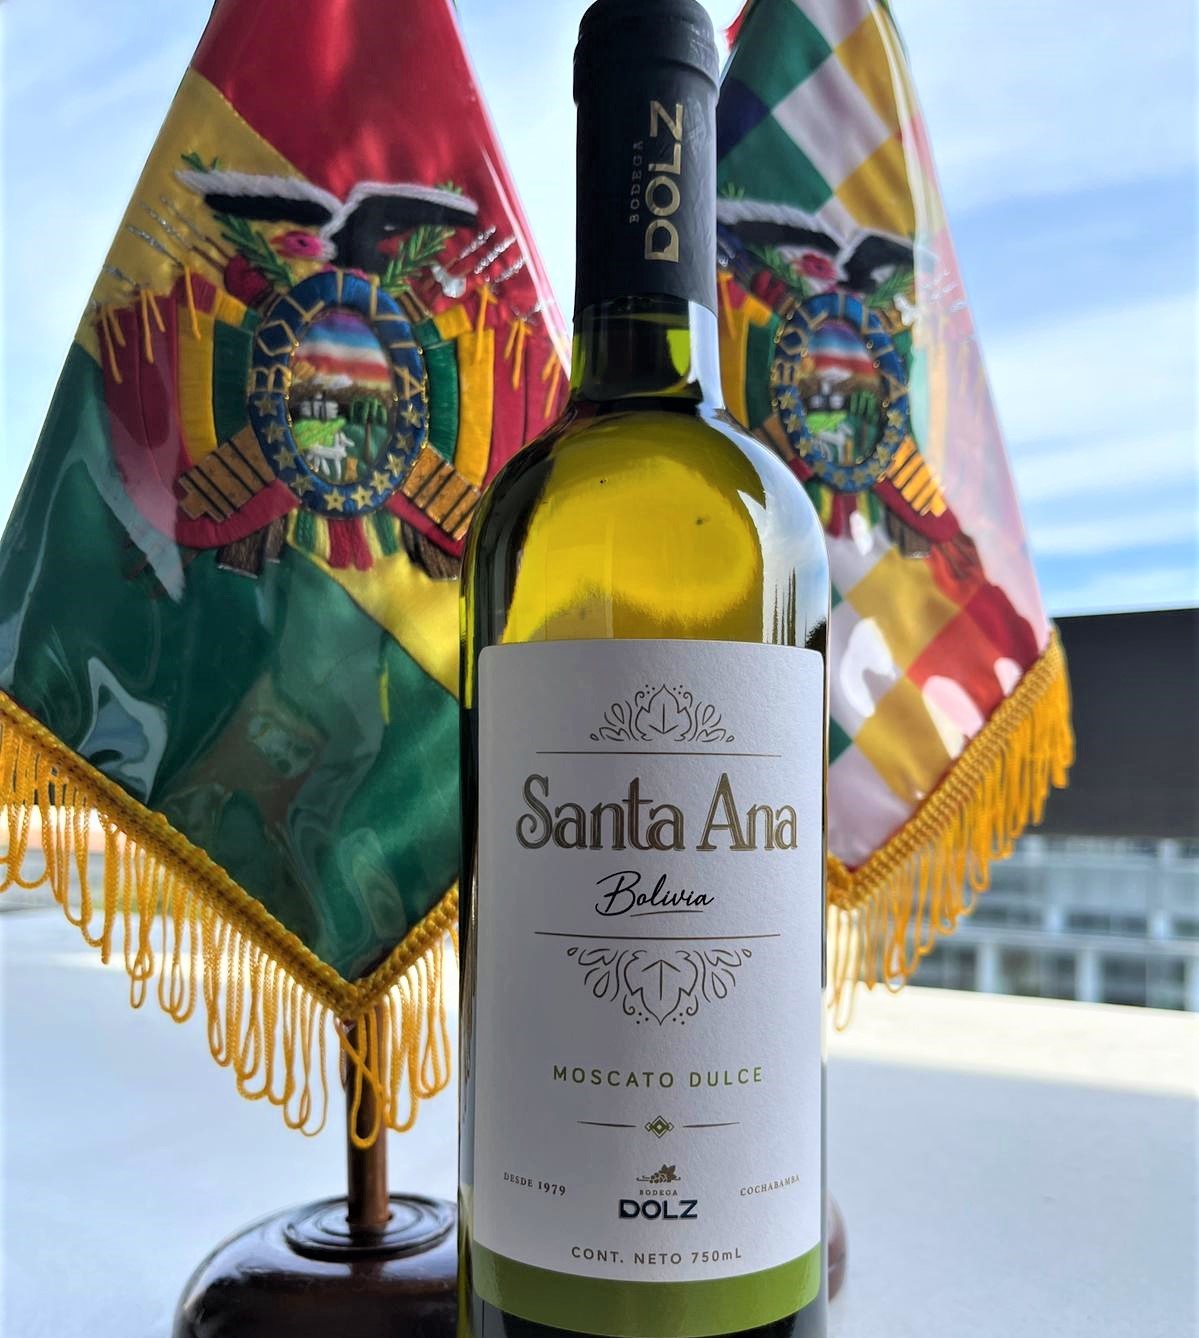 El vino boliviano logra los primeros lugares en el concurso internacional de cata 